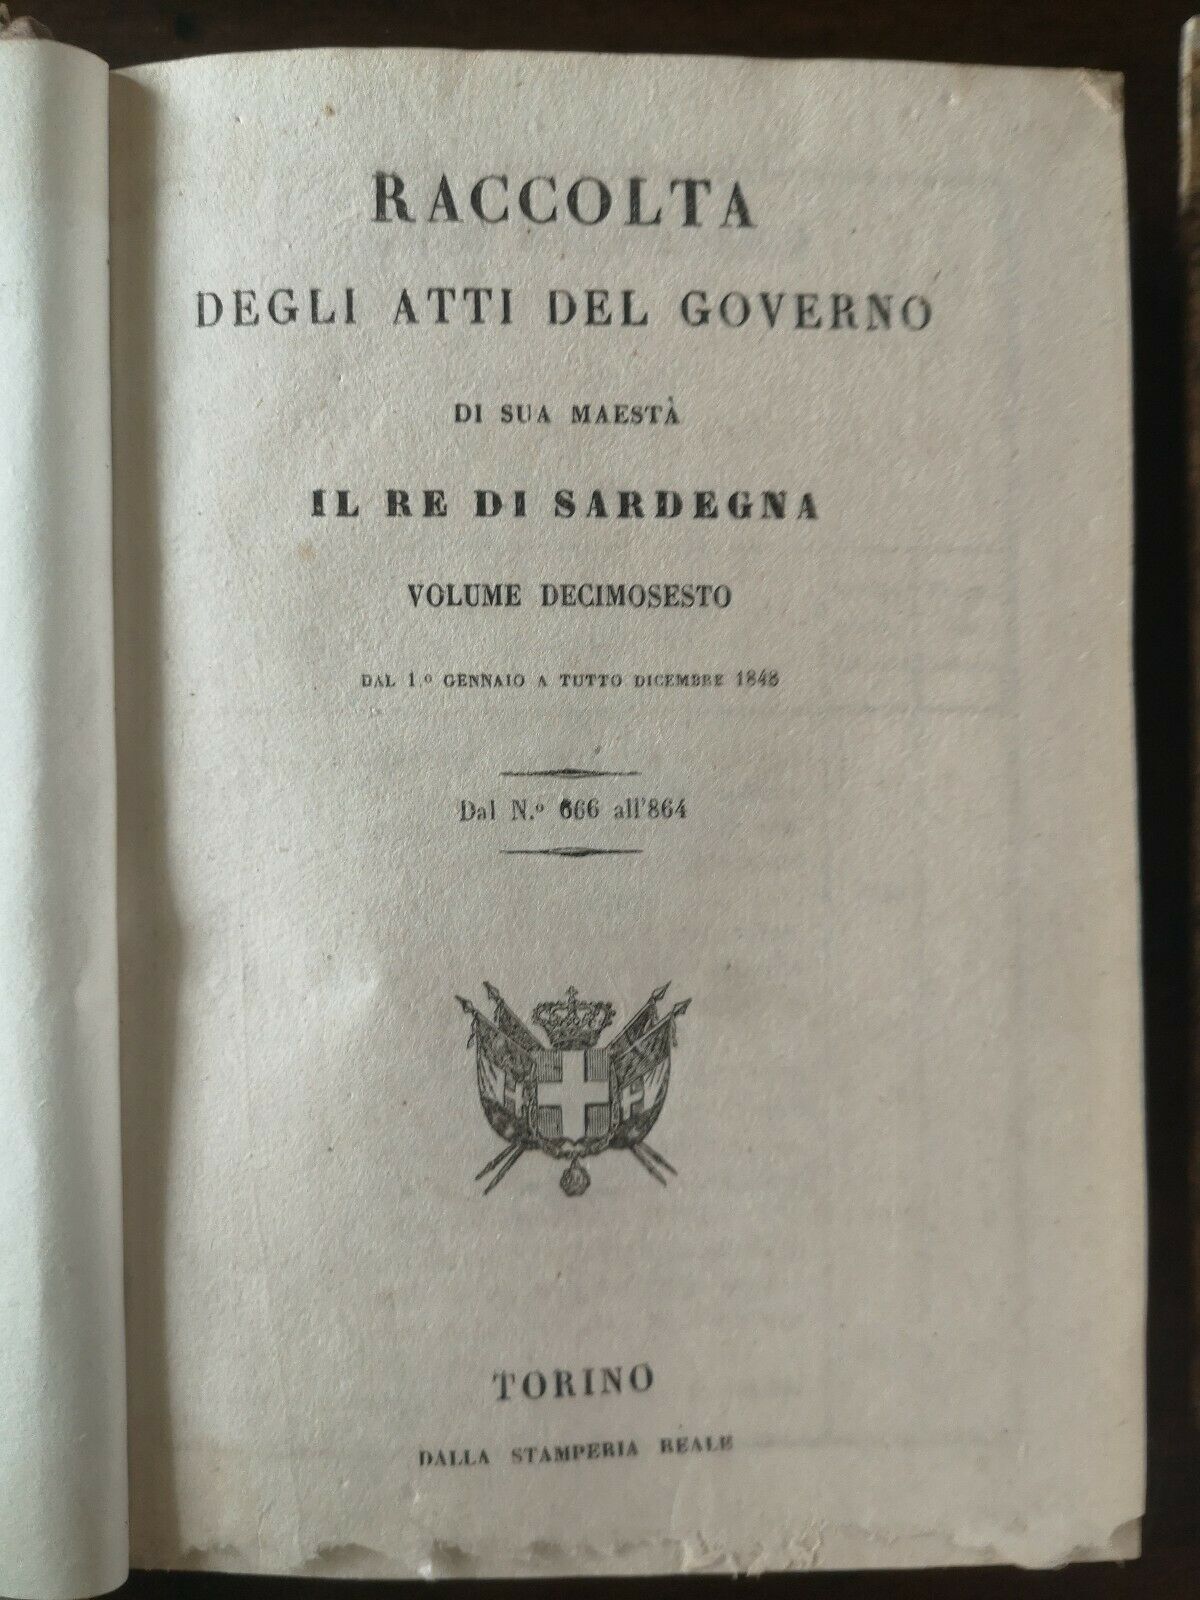 Raccolta Degli Atti Del Governo Il Re Di Sardegna Volume Decimosesto Anno 1848 Stamperia reale Torino parte prima e seconda 